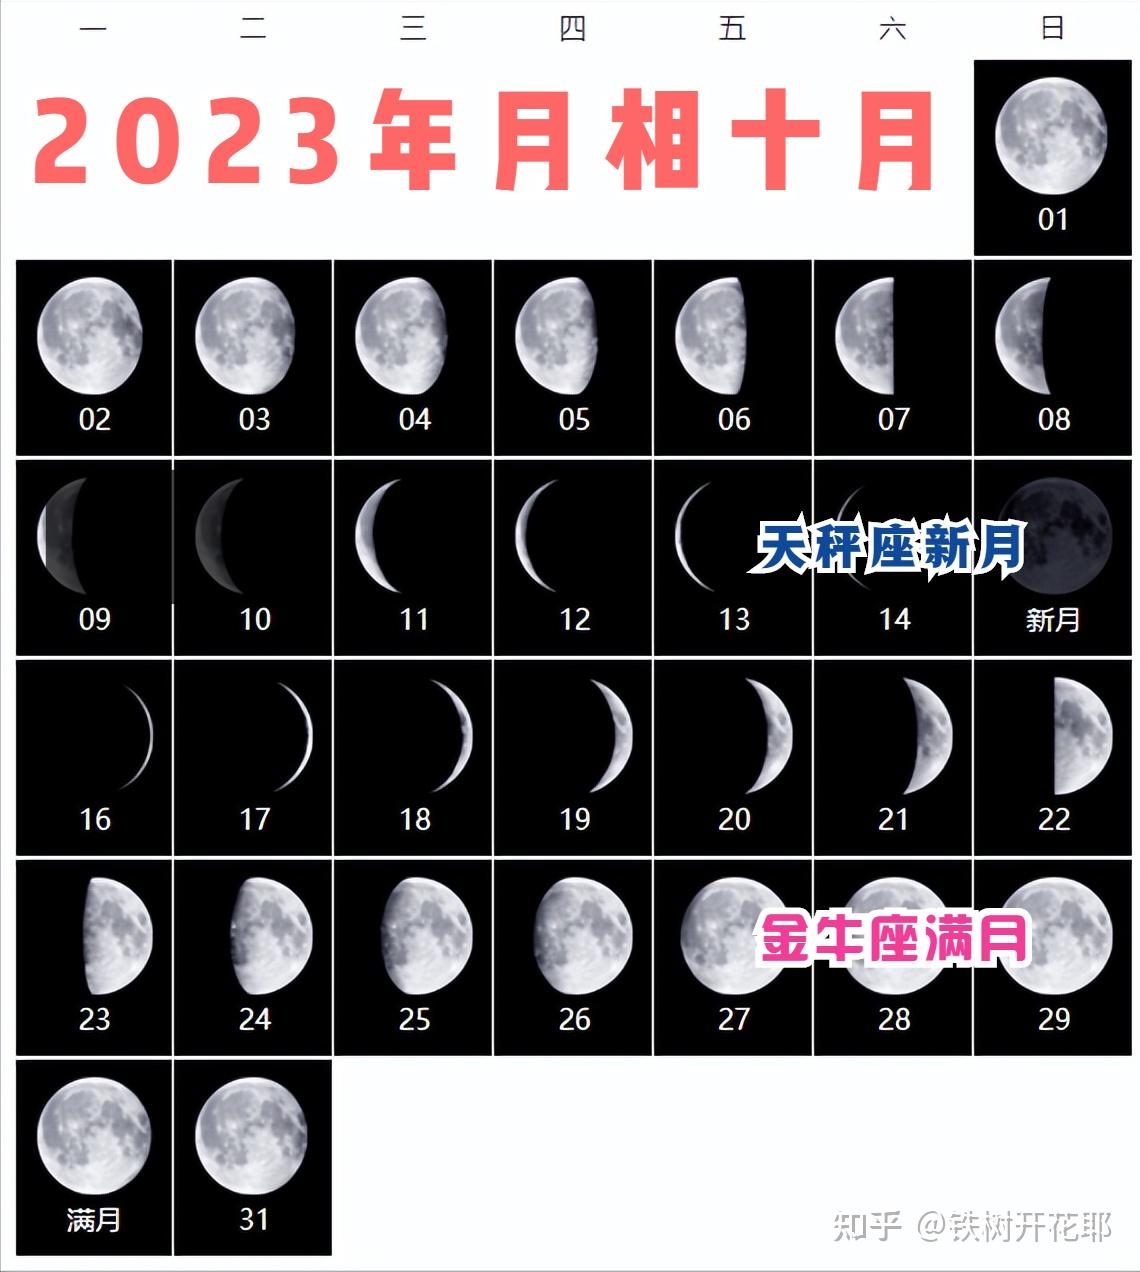 2023年月相月亮许愿提前知道档期